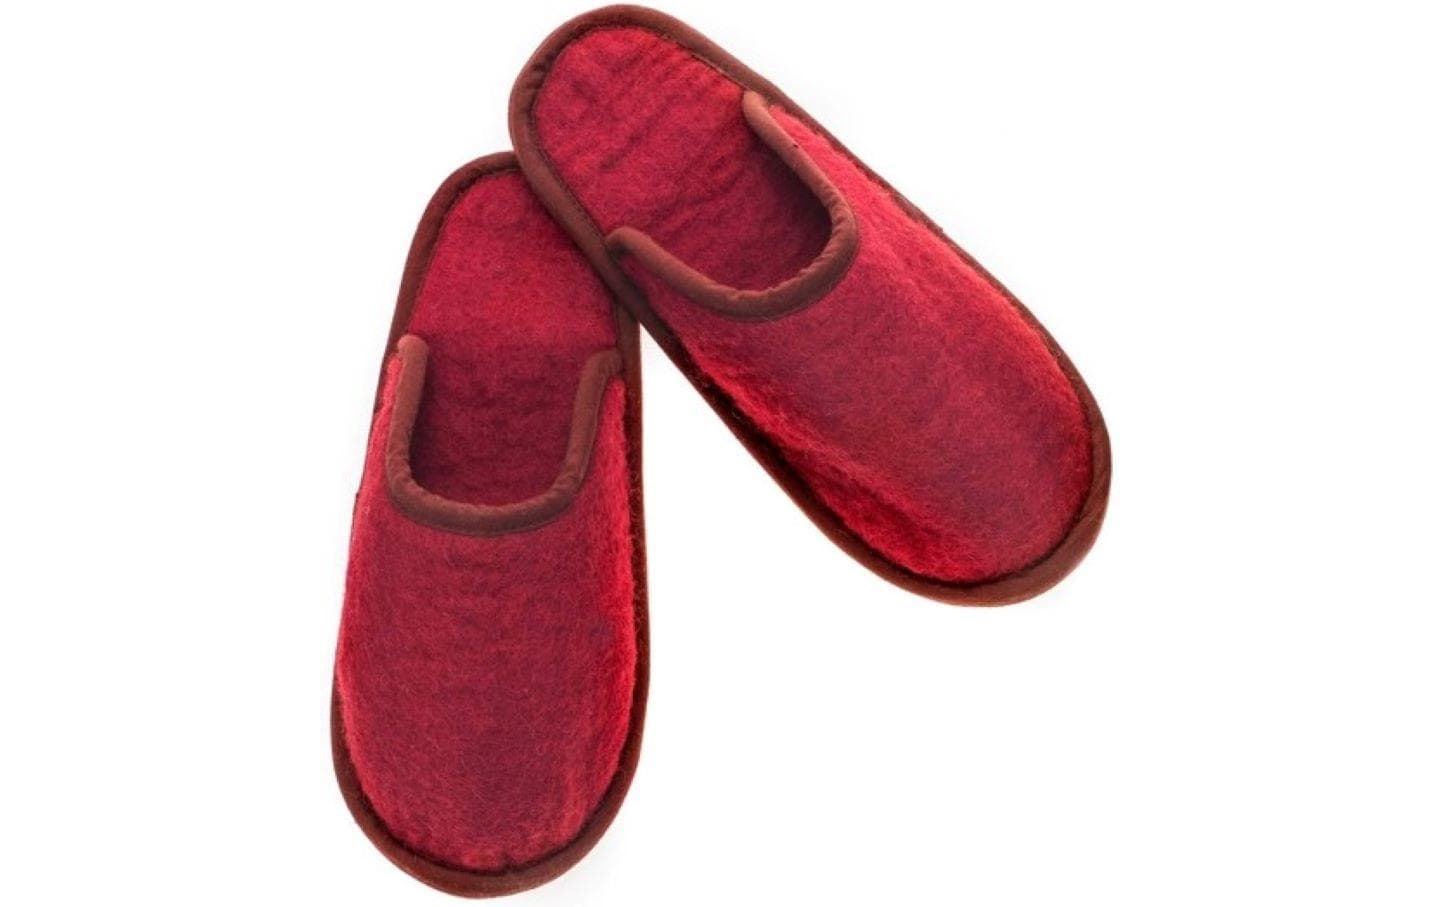 Glorex Filz-Pantoffeln Rot, Grösse M, Farbe: Rot, Filz Art: Filz